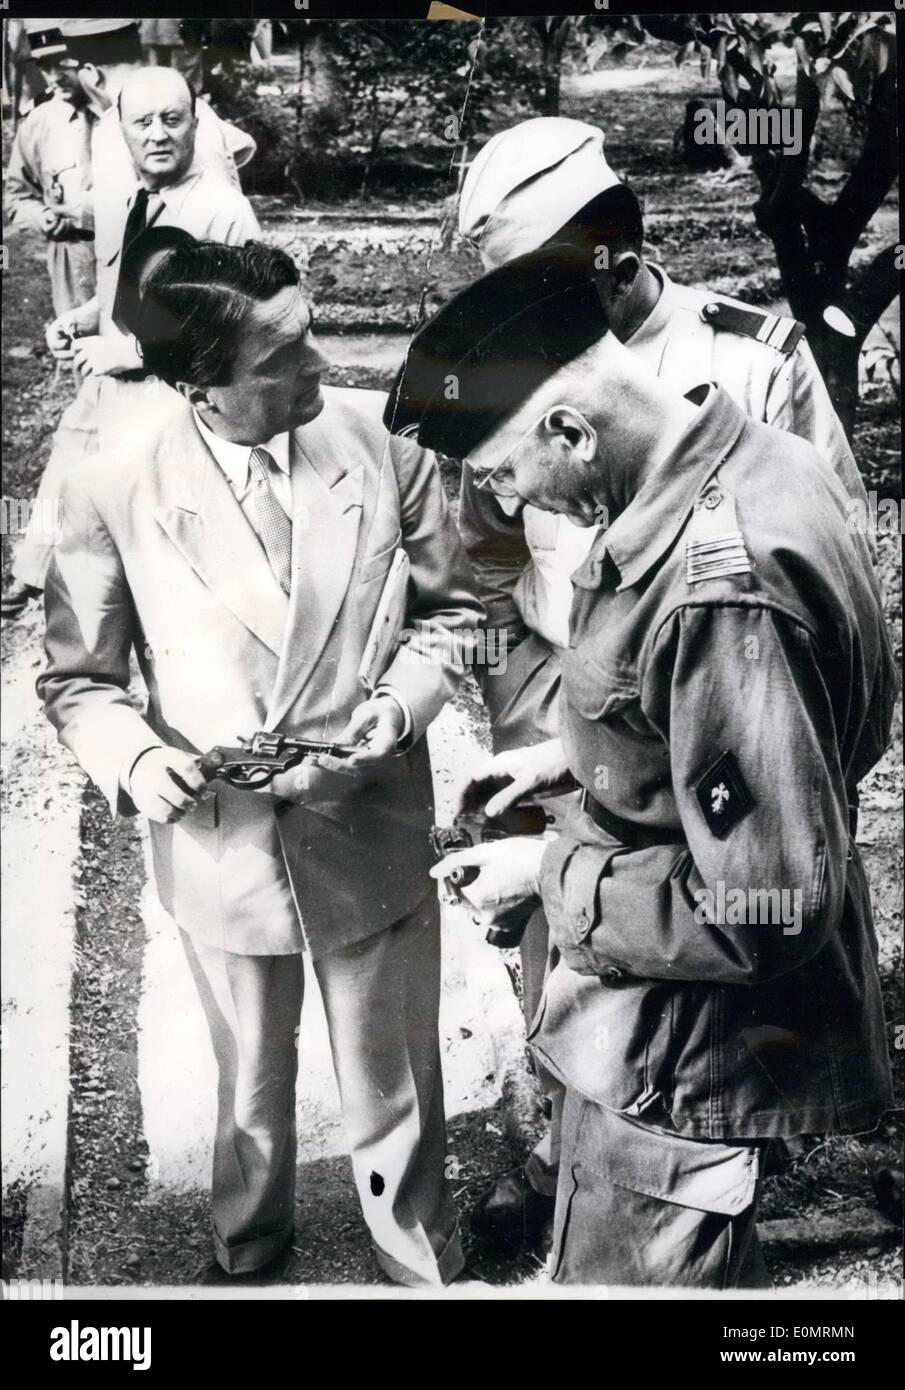 Agosto 08, 1956 - Algeria Il Ministro vede acquisire armi. OPS: mentre visitano Palestro Regione, M. Mac Lejeune, ministro francese delle Forze Armate, esamina uno dei cannoni catturati dalle truppe francesi combattendo contro i ribelli. Foto Stock